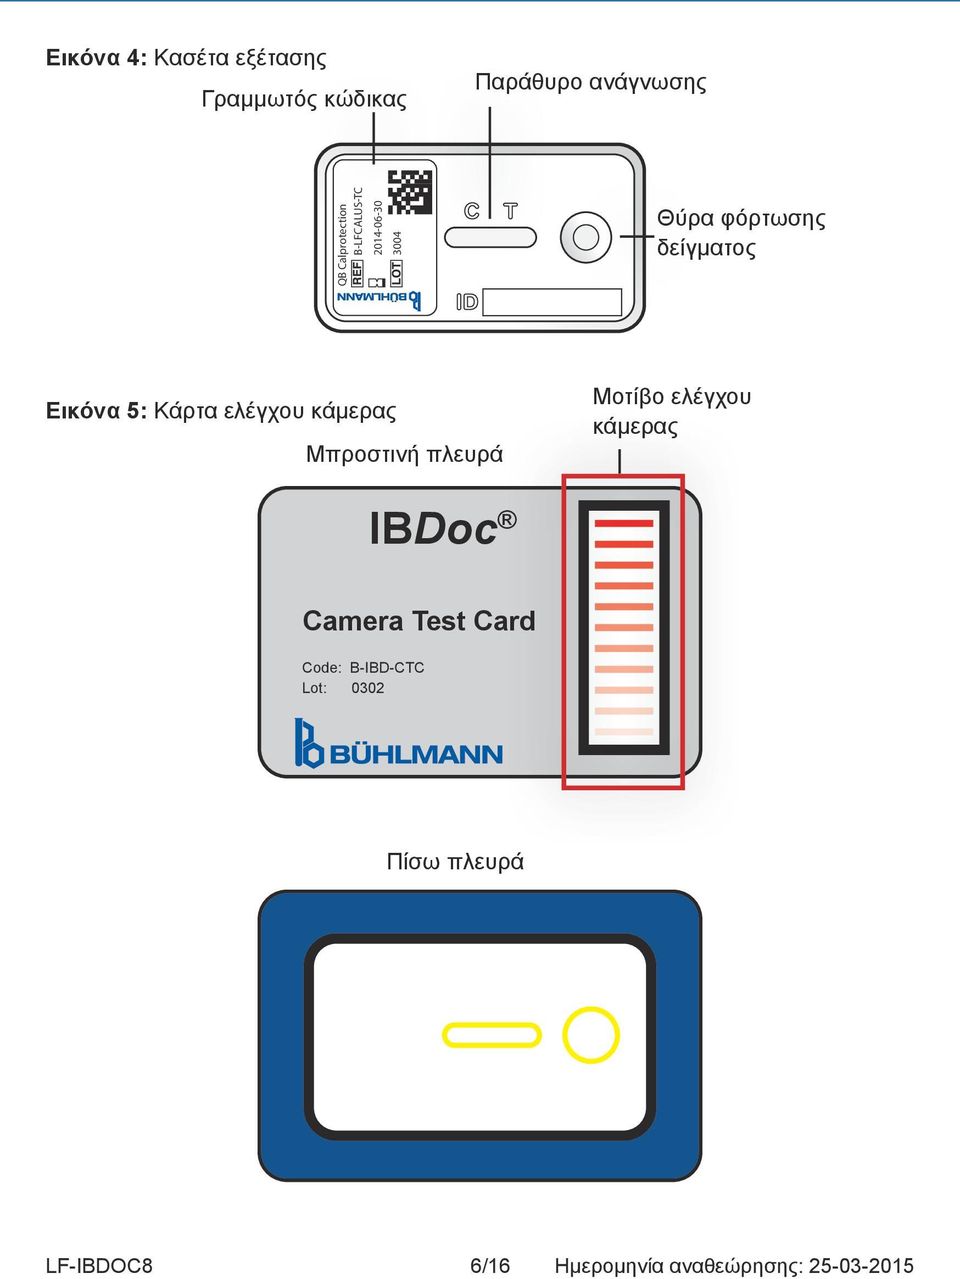 Κάρτα ελέγχου κάμερας Μπροστινή πλευρά Μοτίβο ελέγχου κάμερας IBDoc Camera